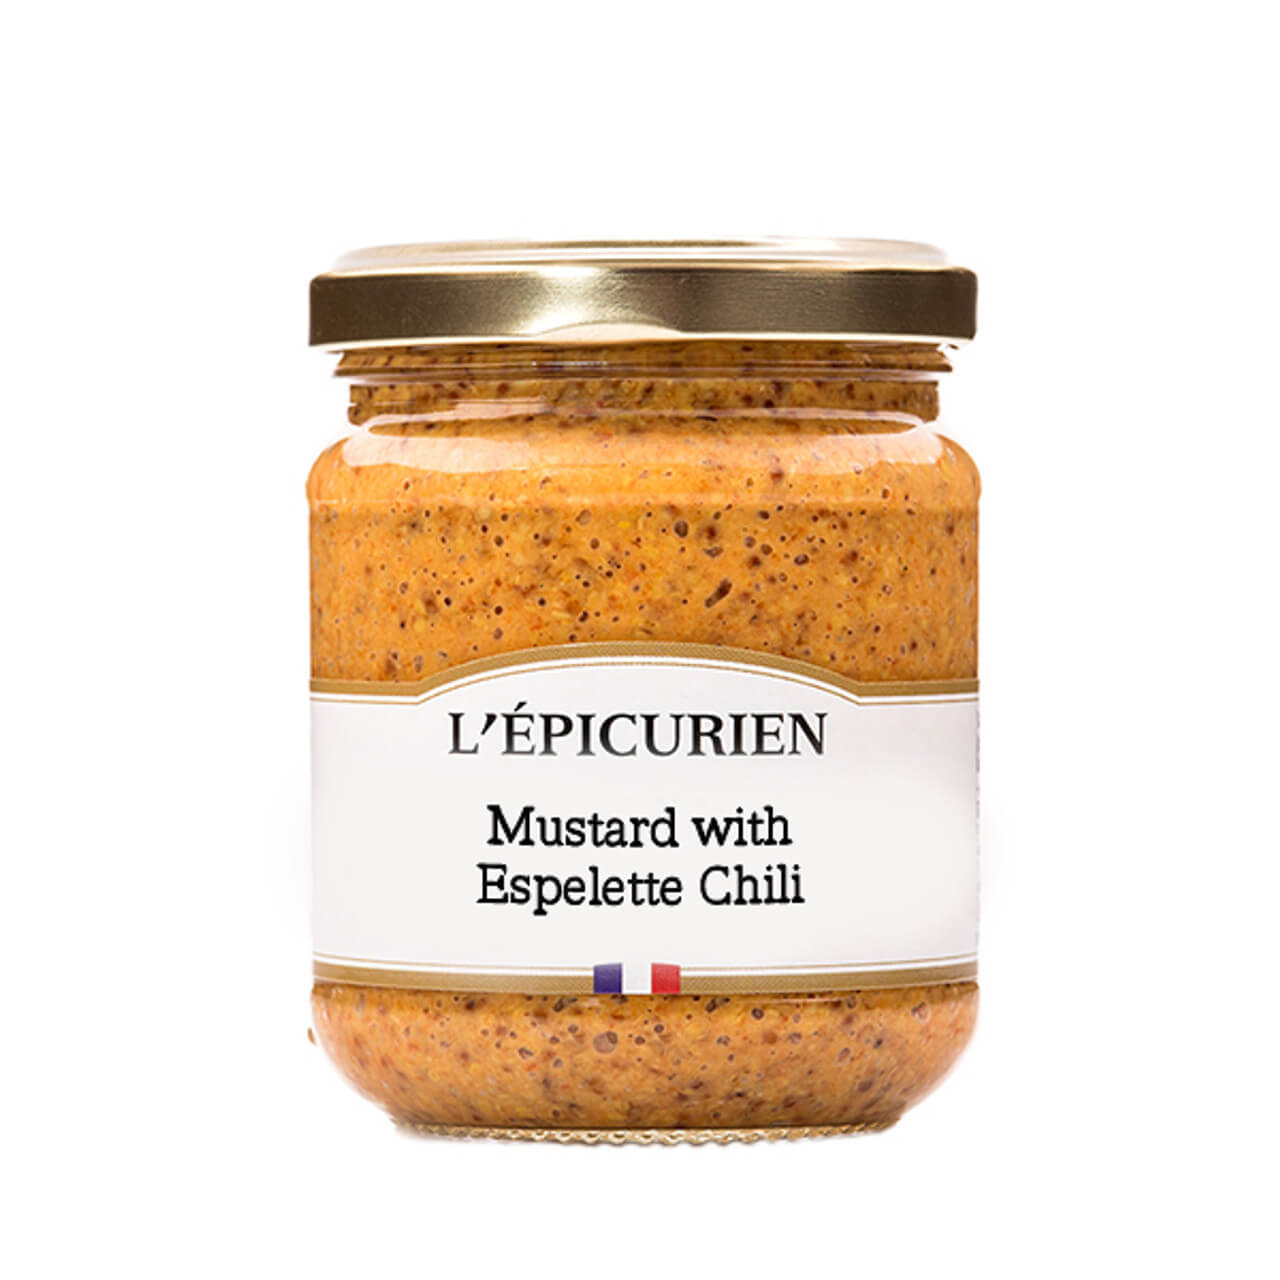 L'epicurien Espelette Chili Mustard | Sudha's Emporium